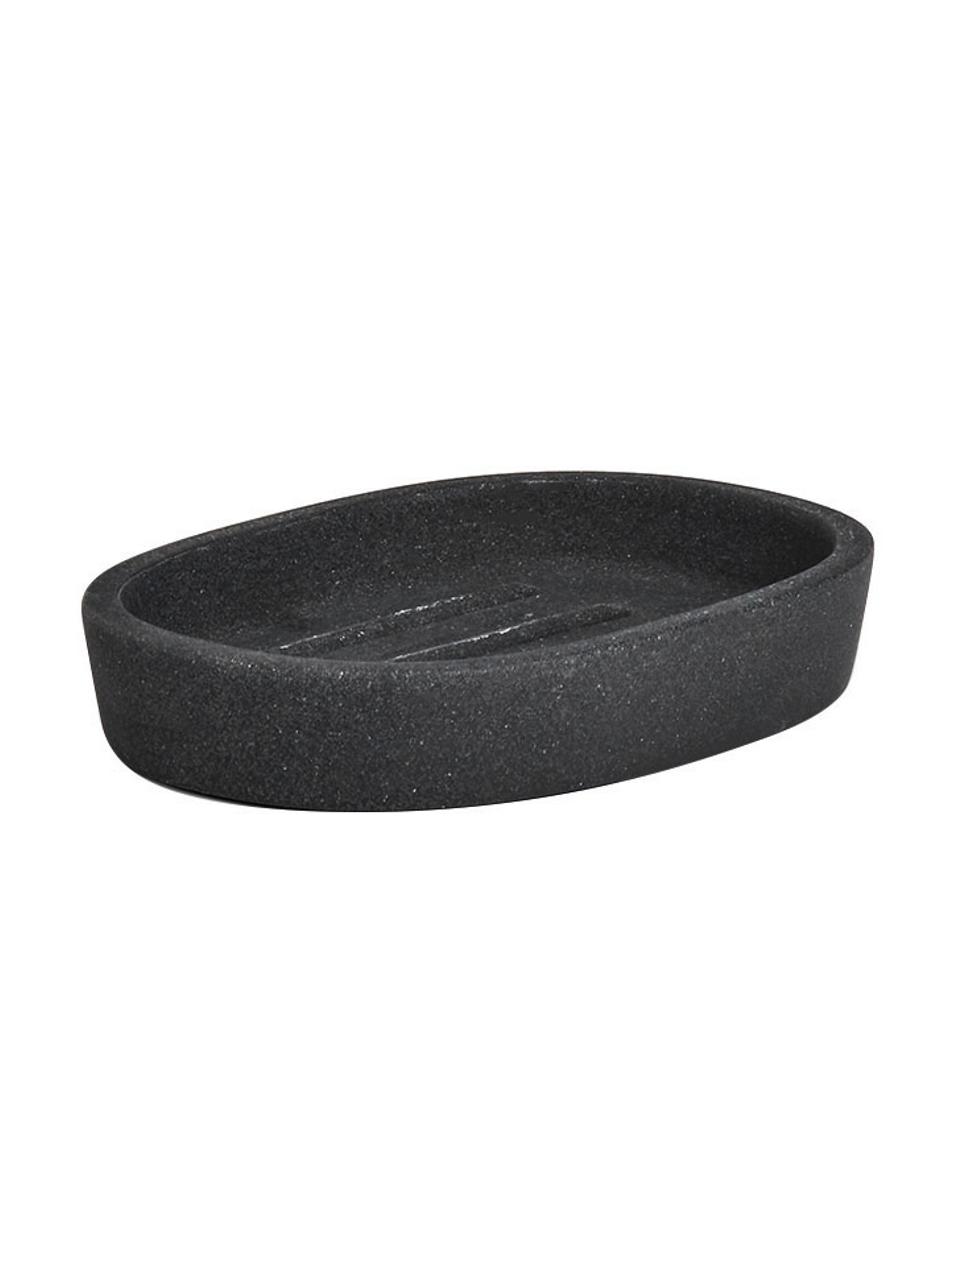 Seifenschale Dark Stone aus Kunststoff, Polyresin, Schwarz, 12 x 2 cm